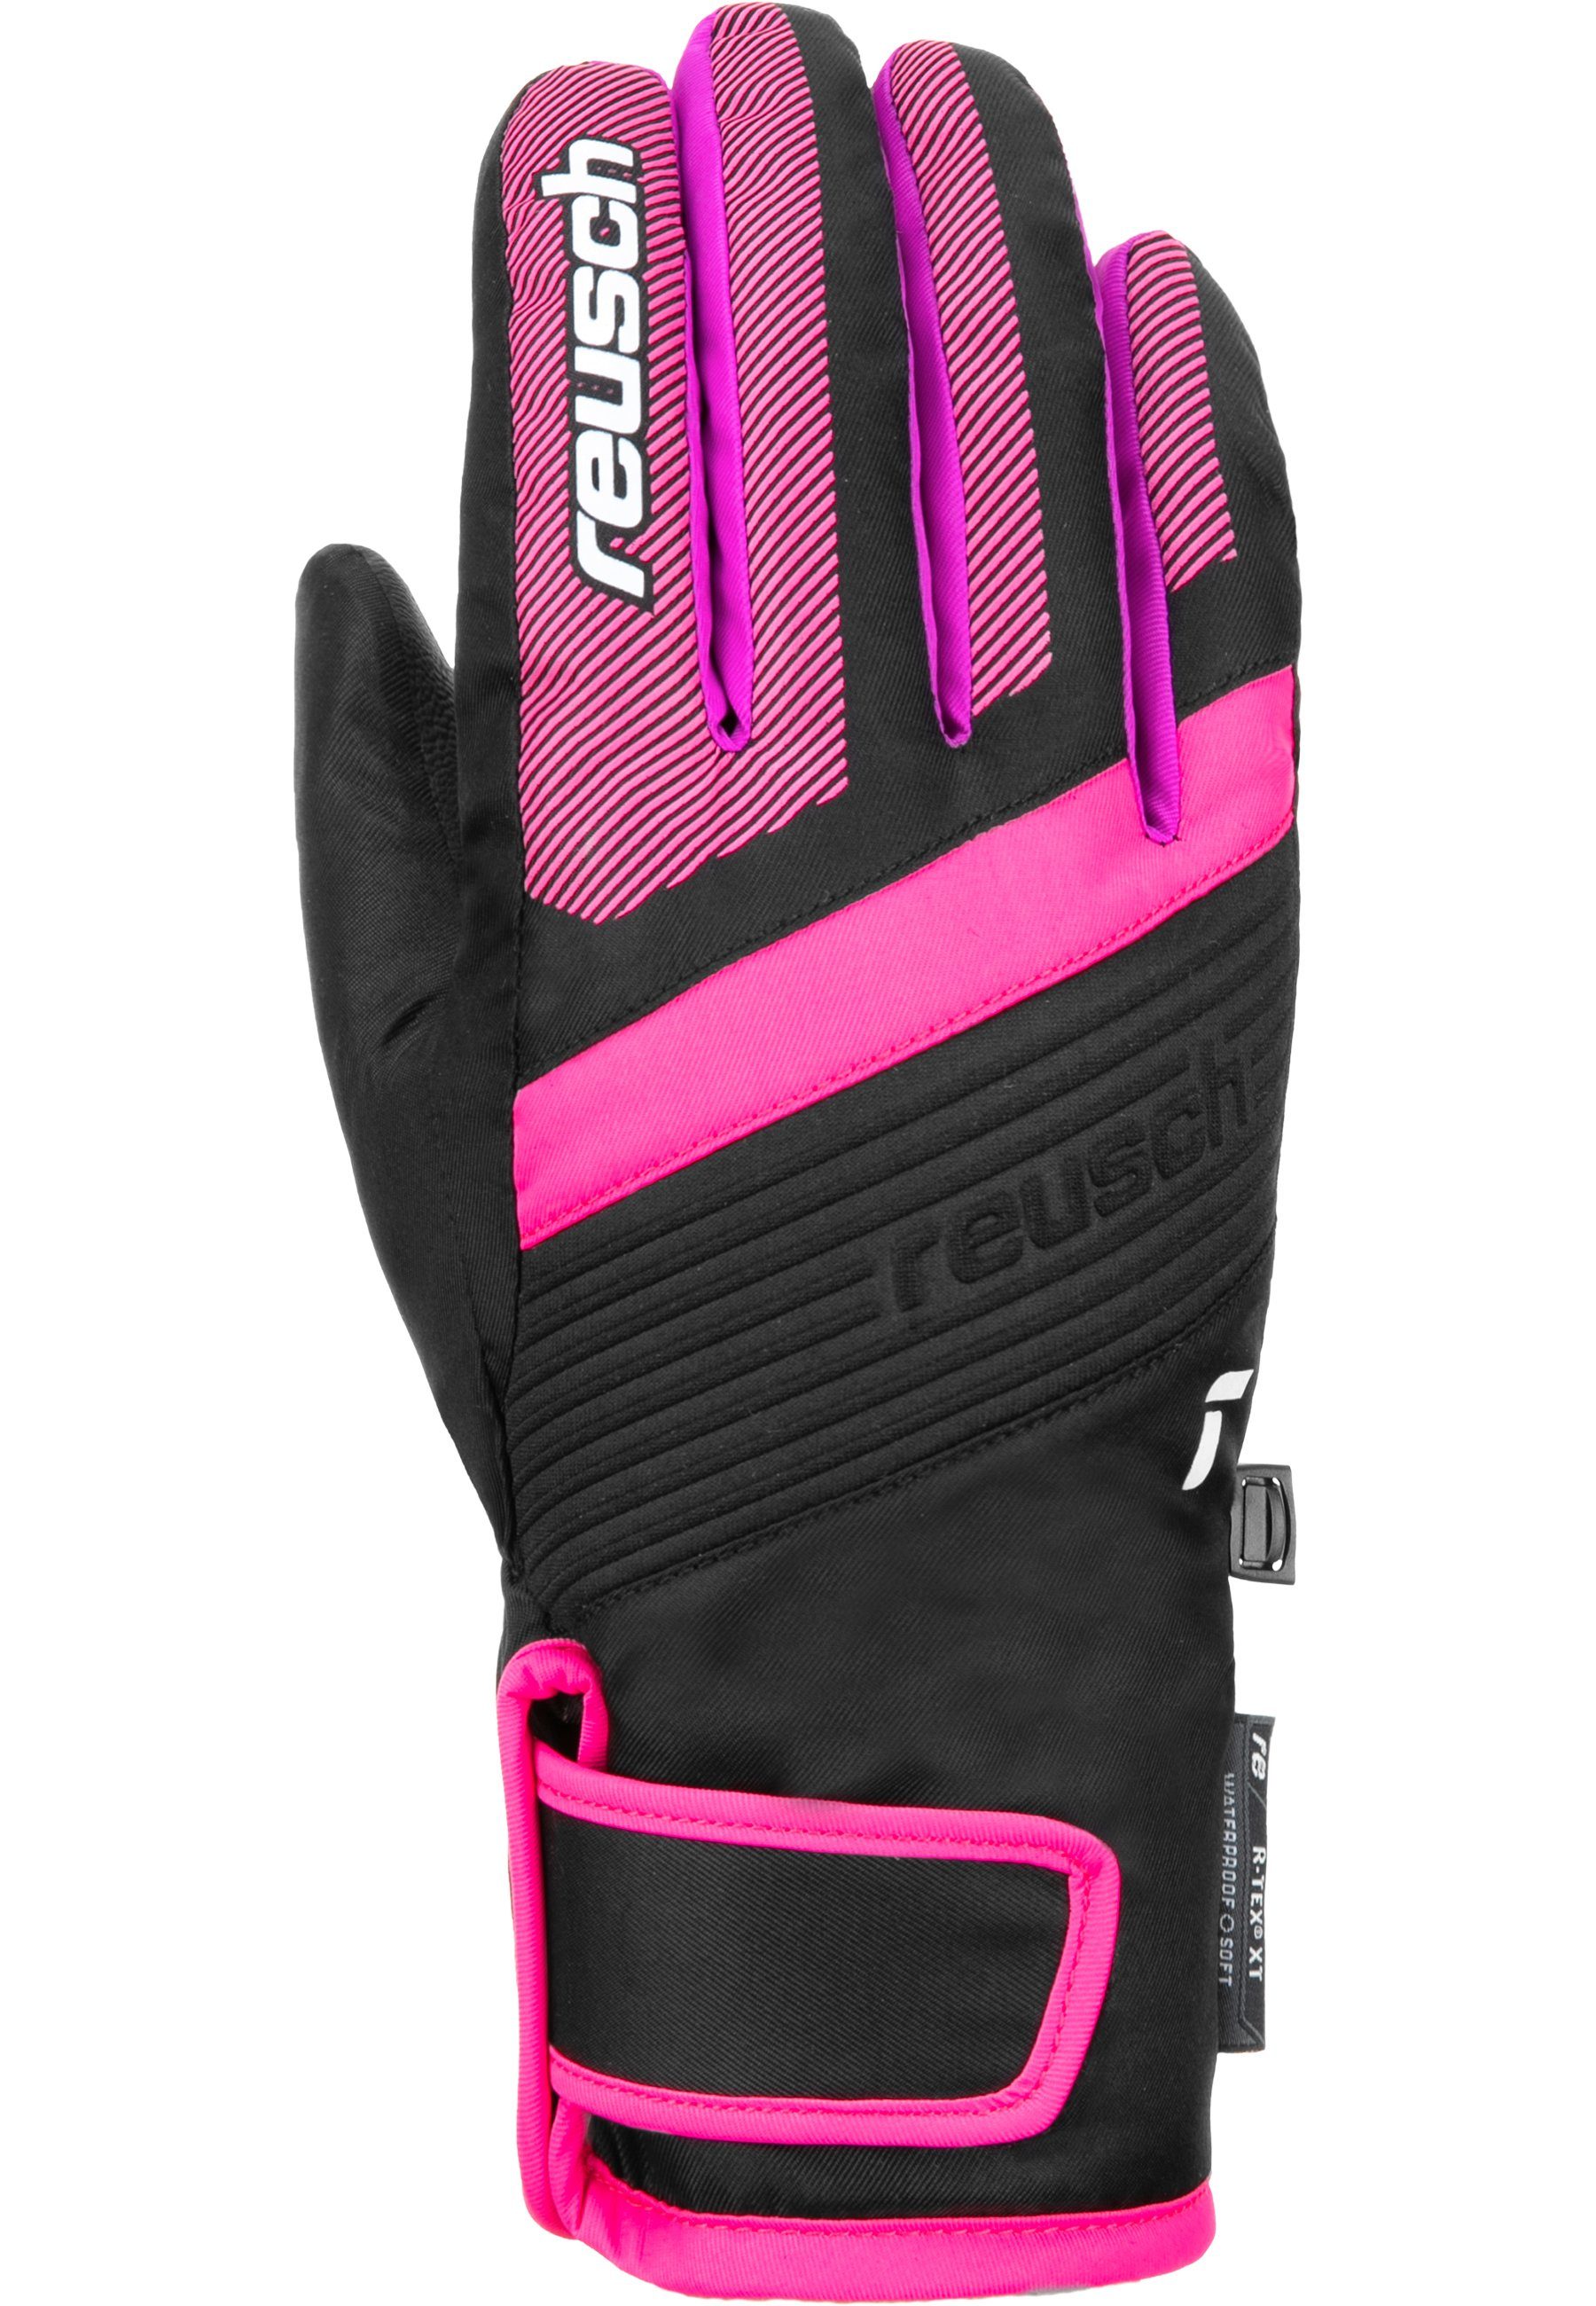 Reusch Skihandschuhe Duke R-TEX XT Junior Design in pink-schwarz sportlichem